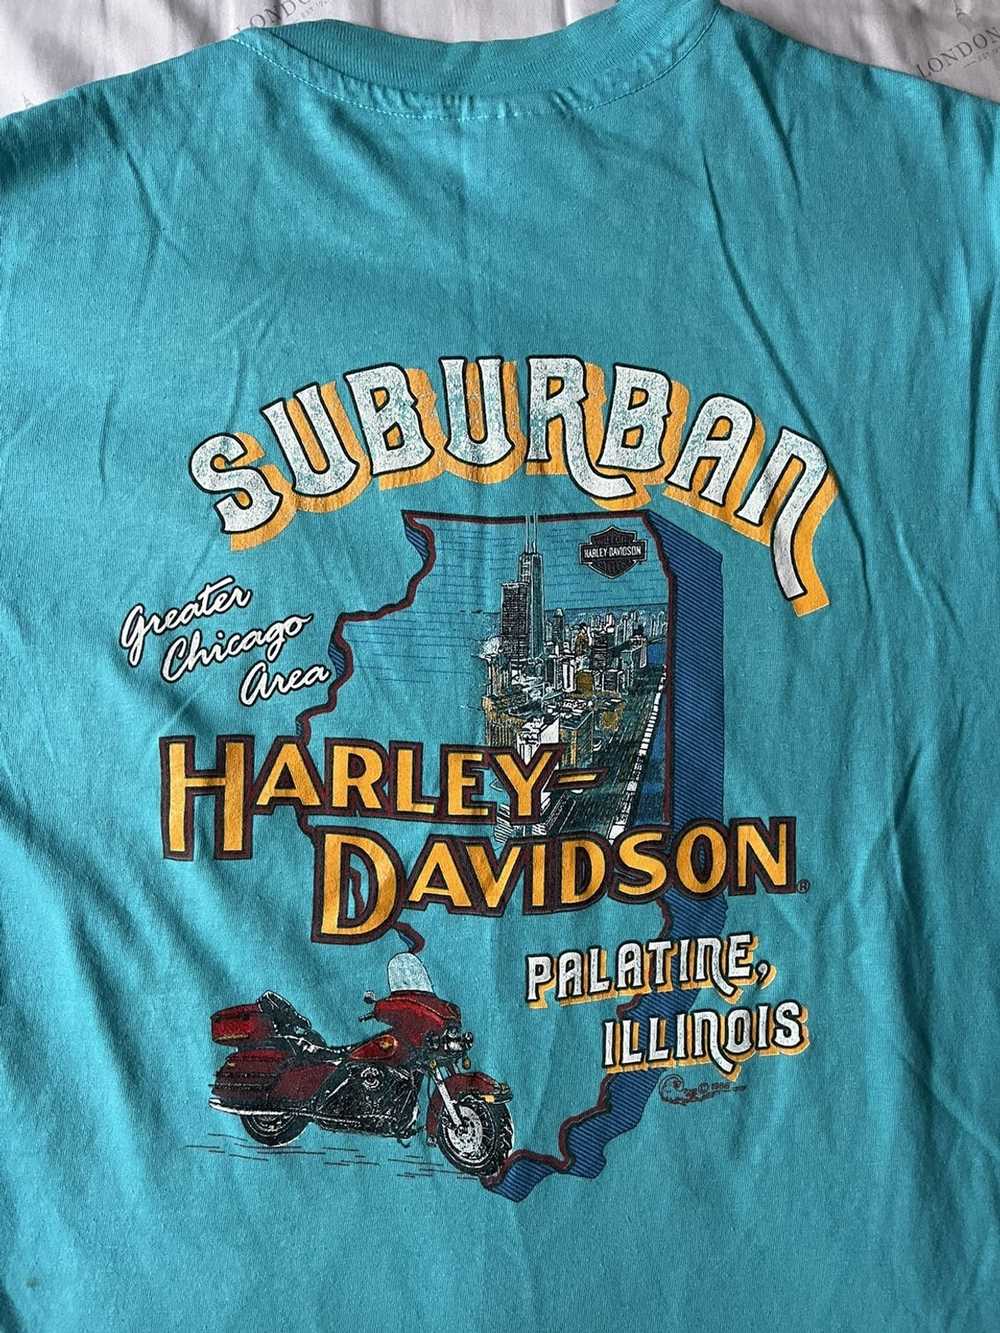 Harley Davidson Vintage Harley Davidson - image 5